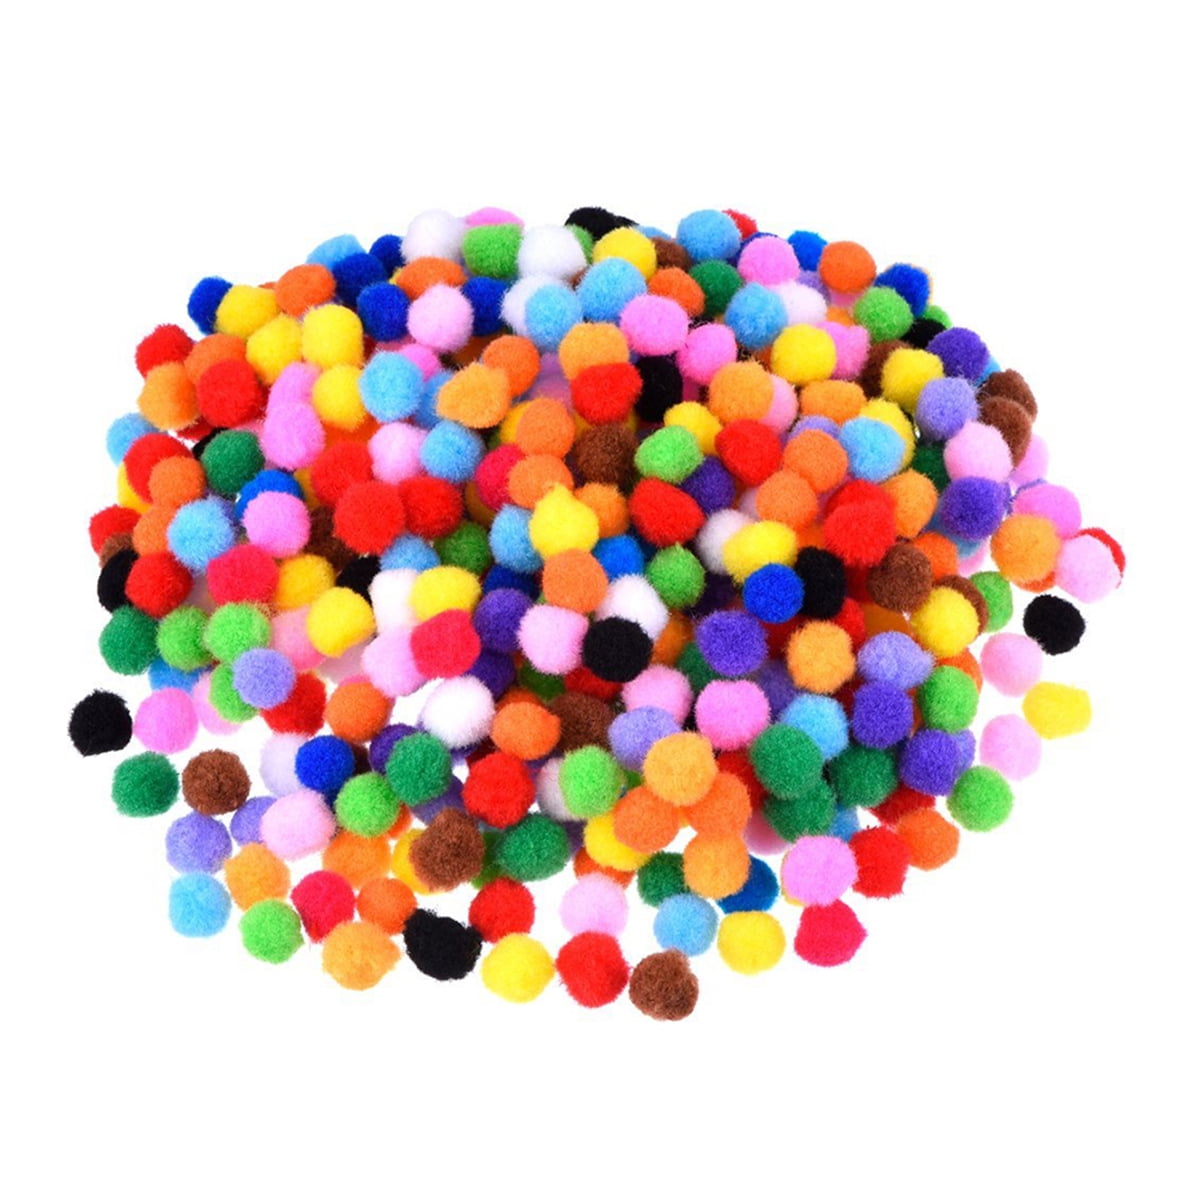 1200pcs Soft 10mm Pom Poms Pompoms Ball Assorted Childrens DIY Crafts Supplies 